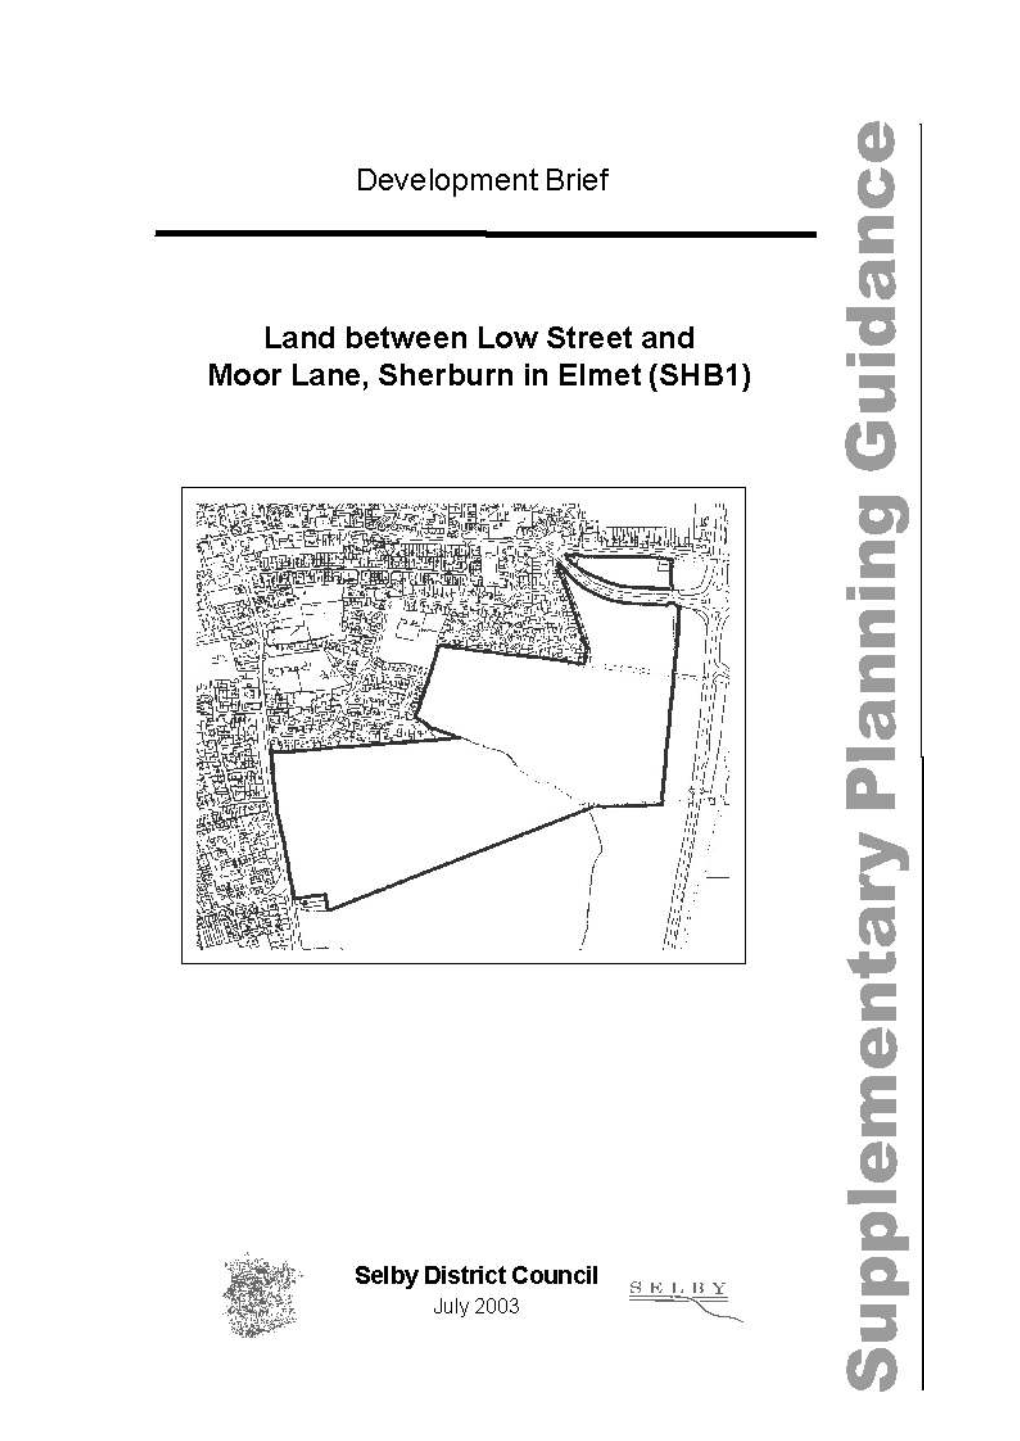 Land Between Low Street and Moor Lane, Sherburn in Elmet (SHB/1)